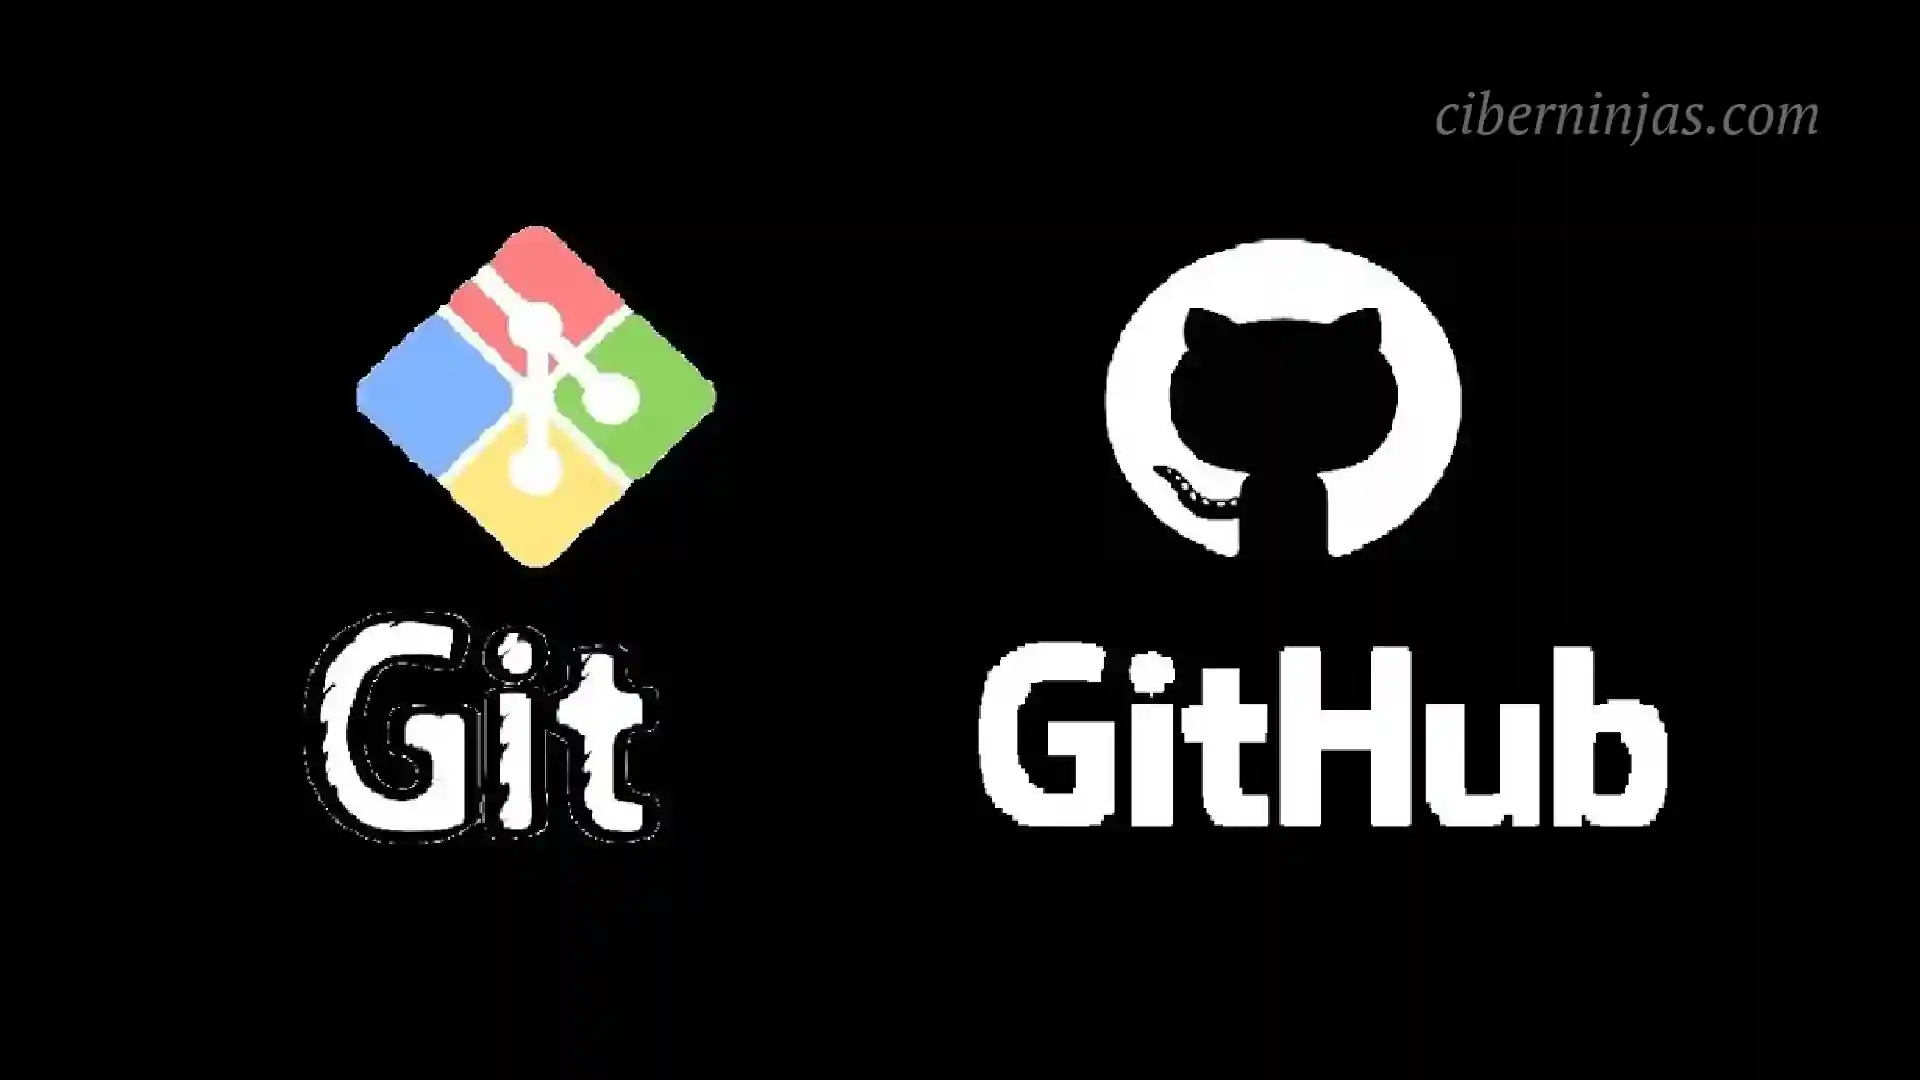 ¿Cómo aprender Git y Github desde cero?